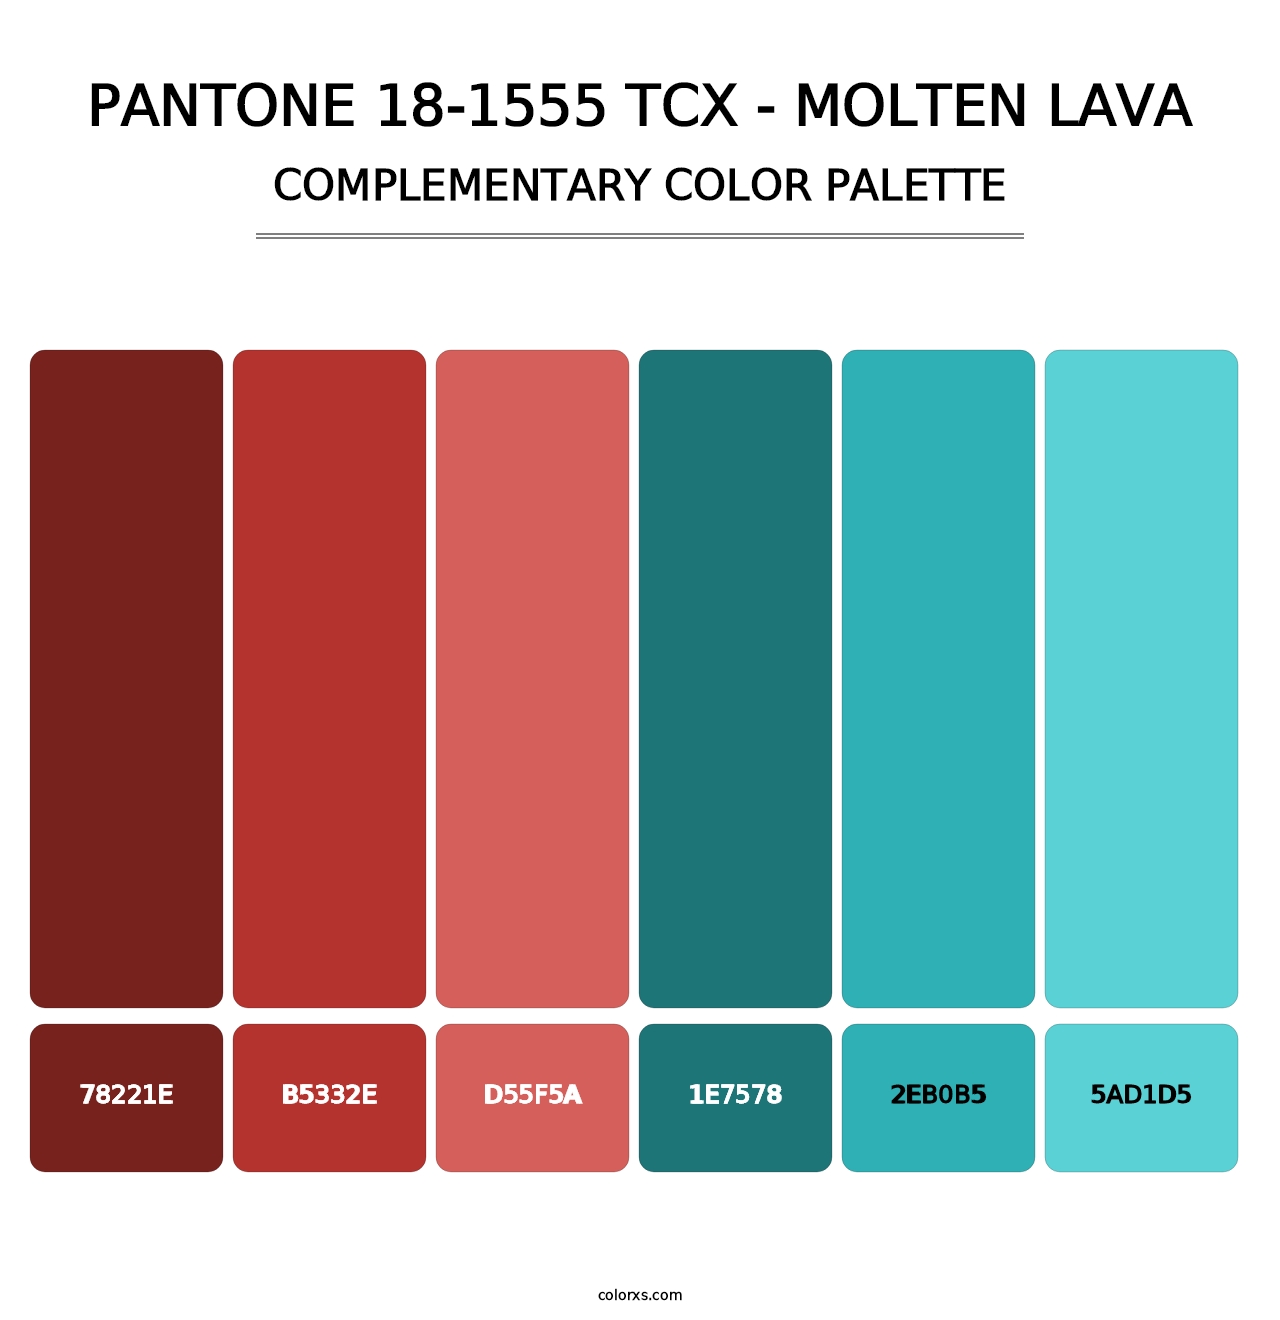 PANTONE 18-1555 TCX - Molten Lava - Complementary Color Palette